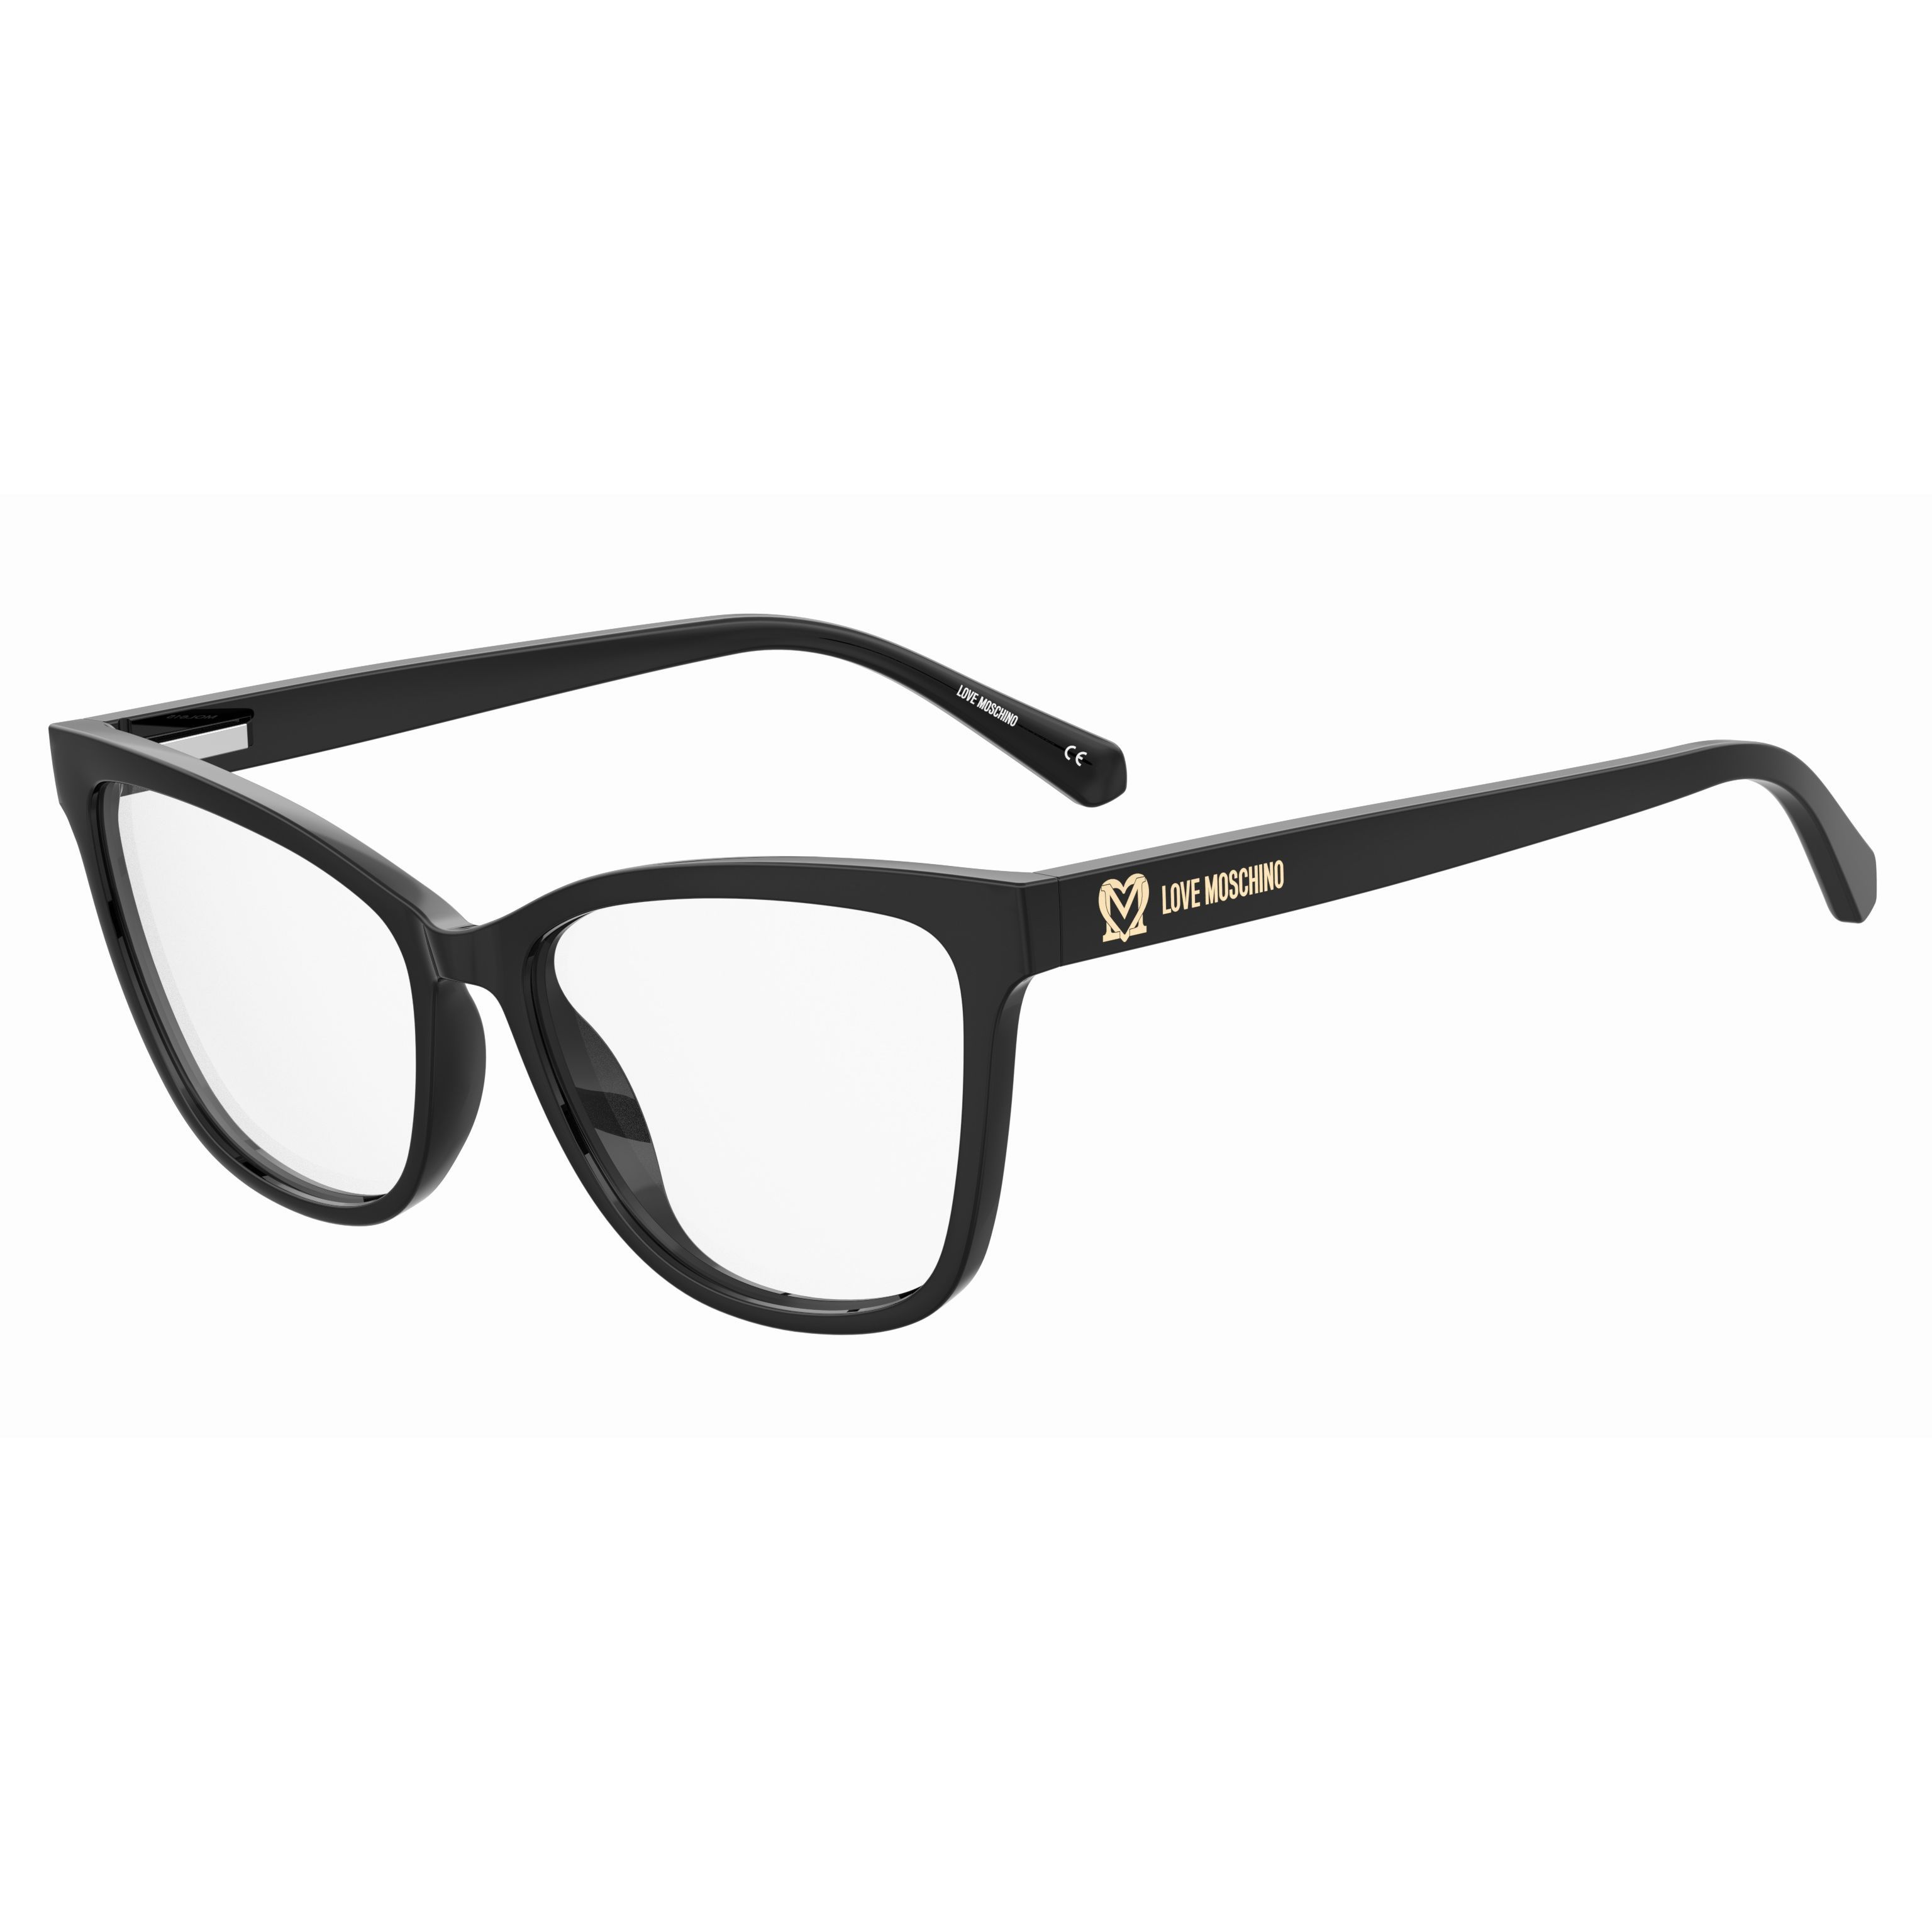 MOL615 Cateye Eyeglasses 807 - size 54